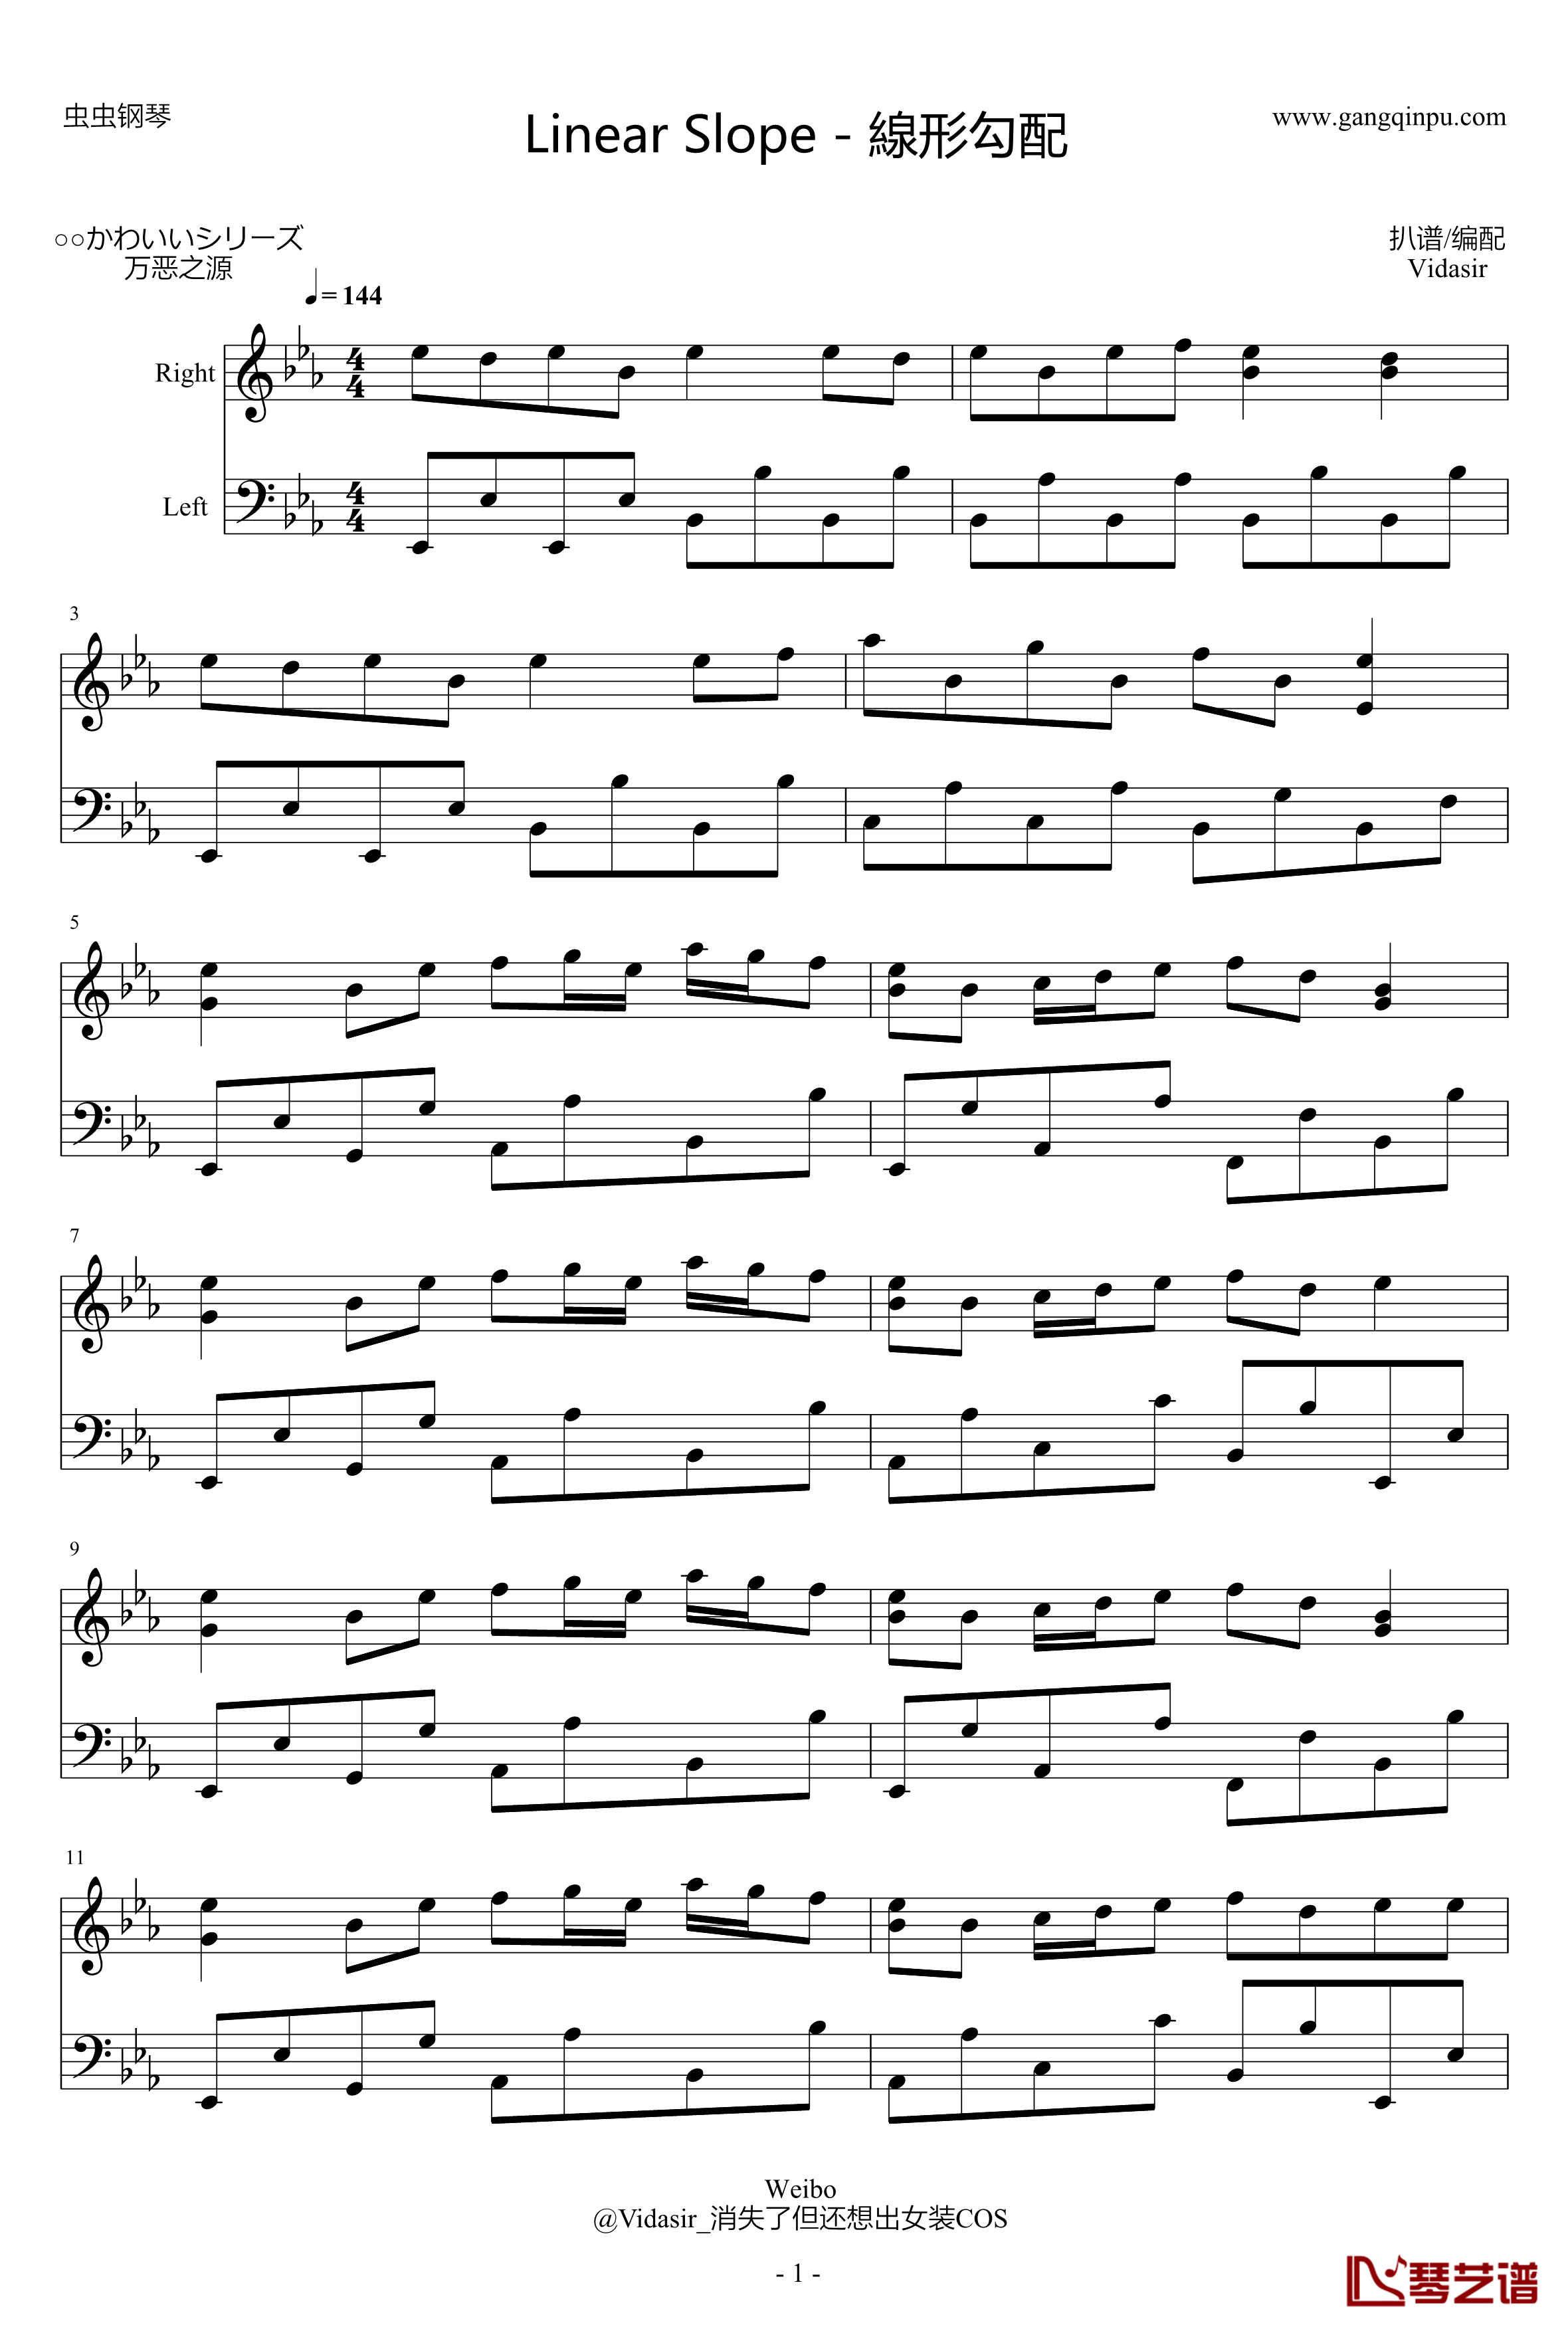 Linear Slope钢琴谱-線形勾配-かわいいシリーズ万恶之源1